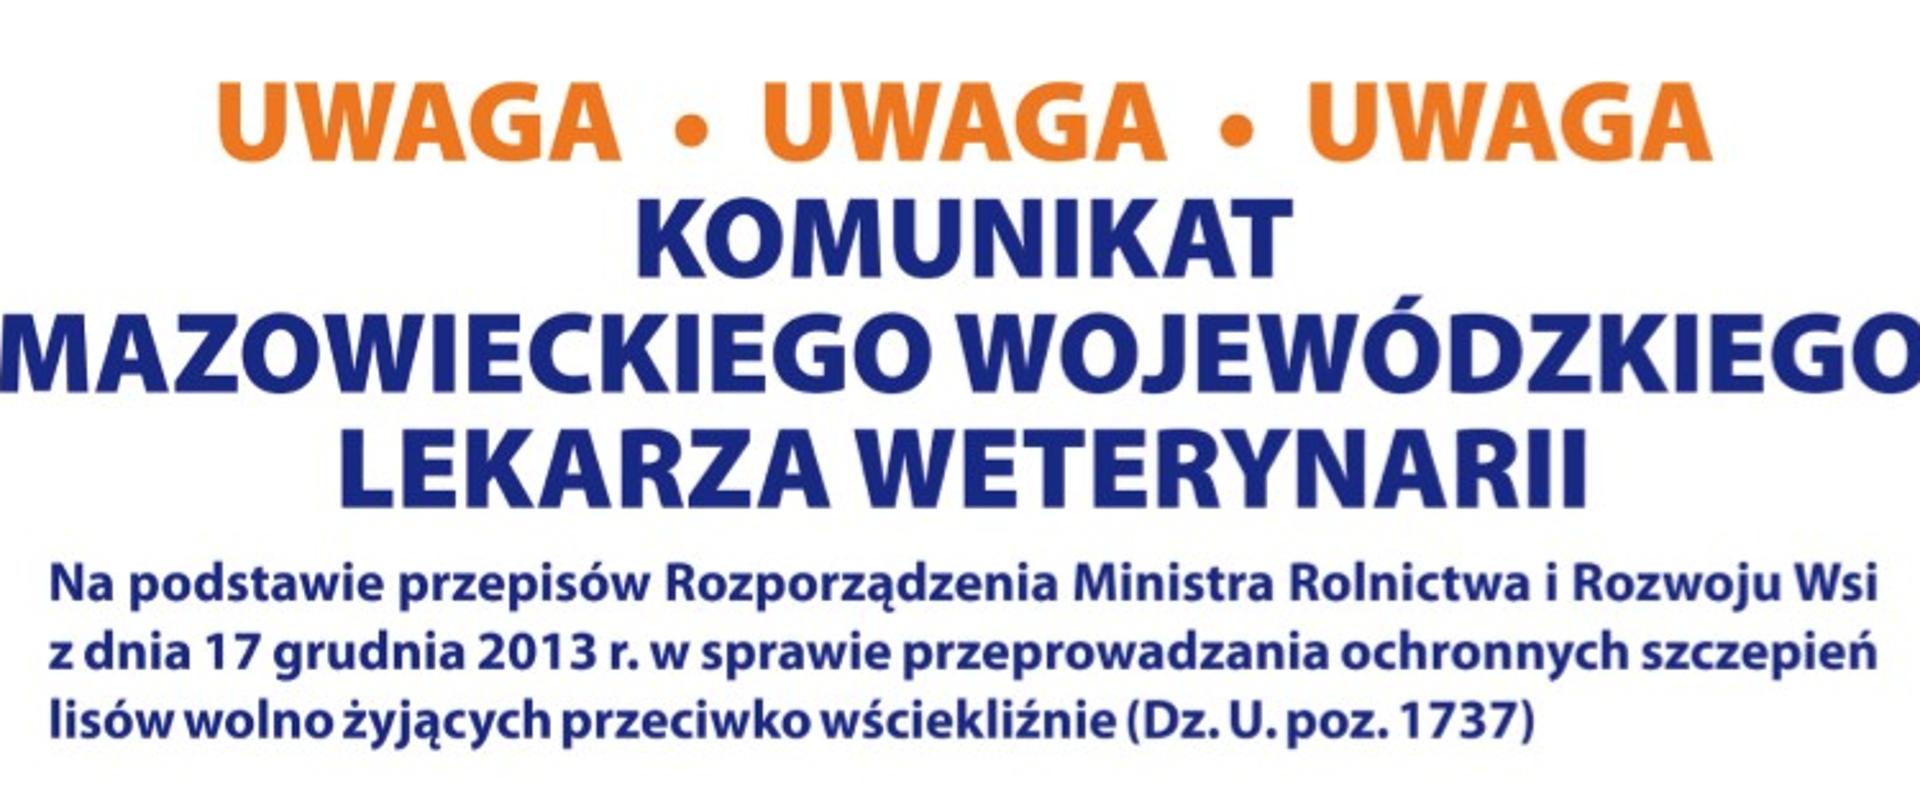 Grafika z napisem Uwaga! Komunikat Mazowieckiego Wojewódzkiego Lekarza Weterynarii w sprawie szczepienia lisów